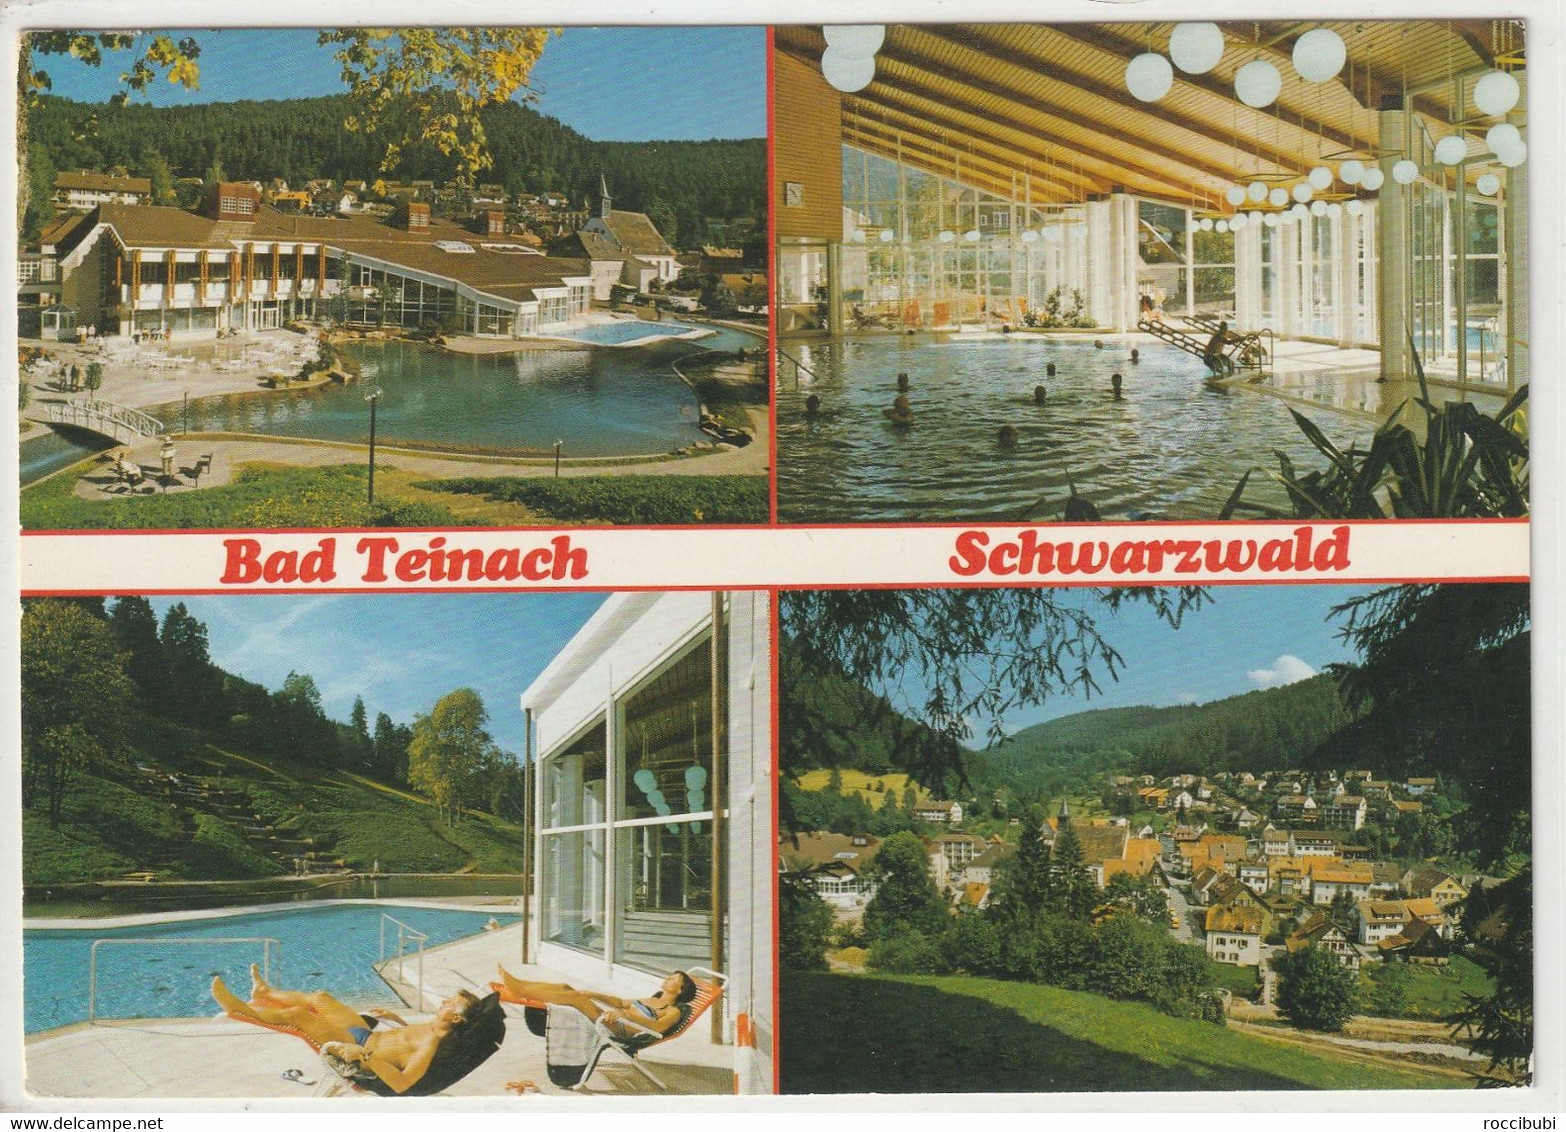 Bad Teinach, Baden-Württemberg - Bad Teinach